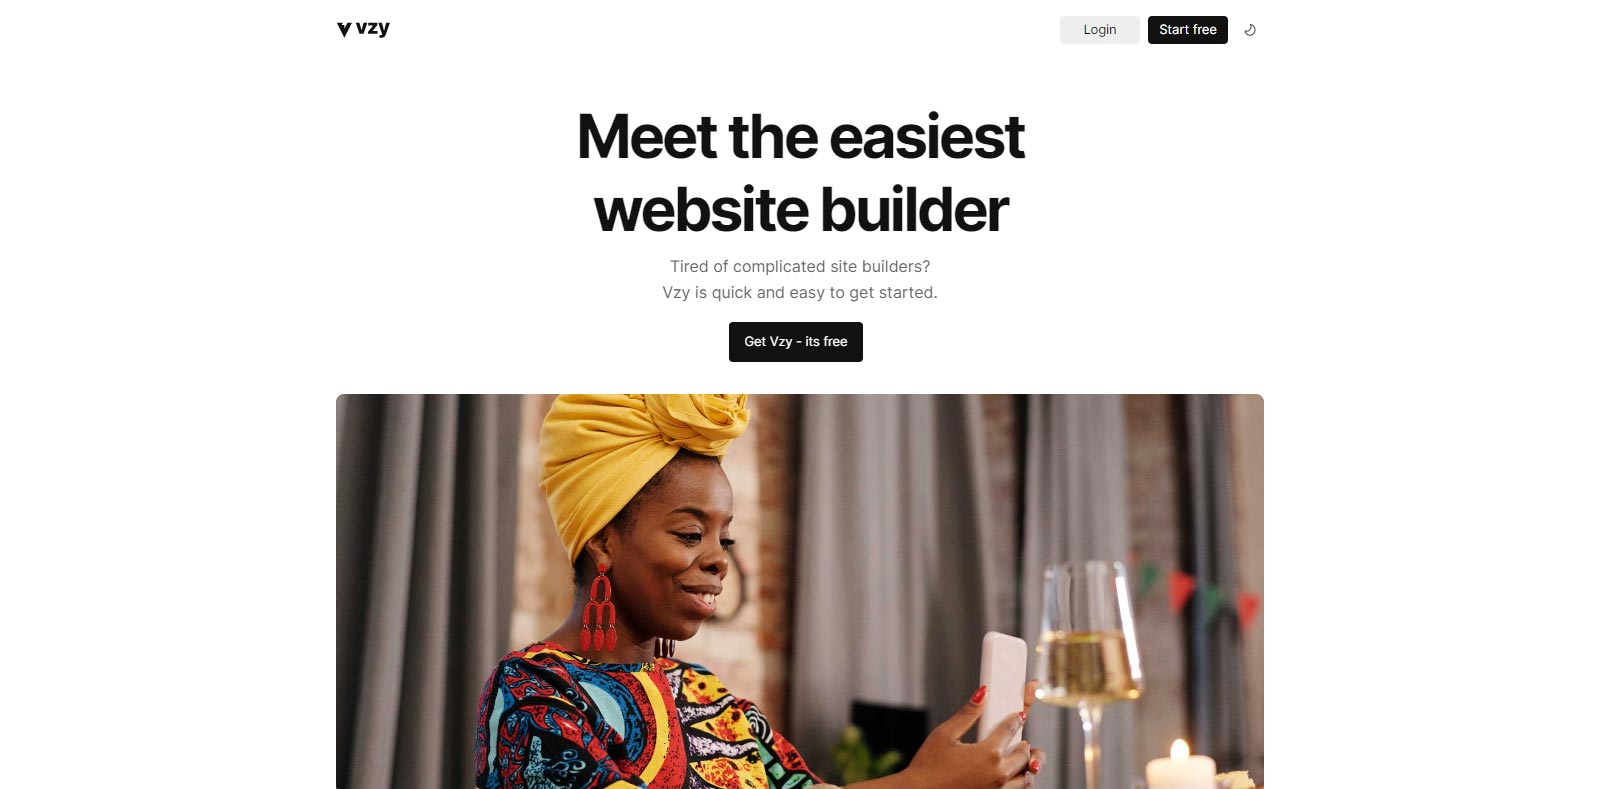 Vzy is a easiest website builder platform